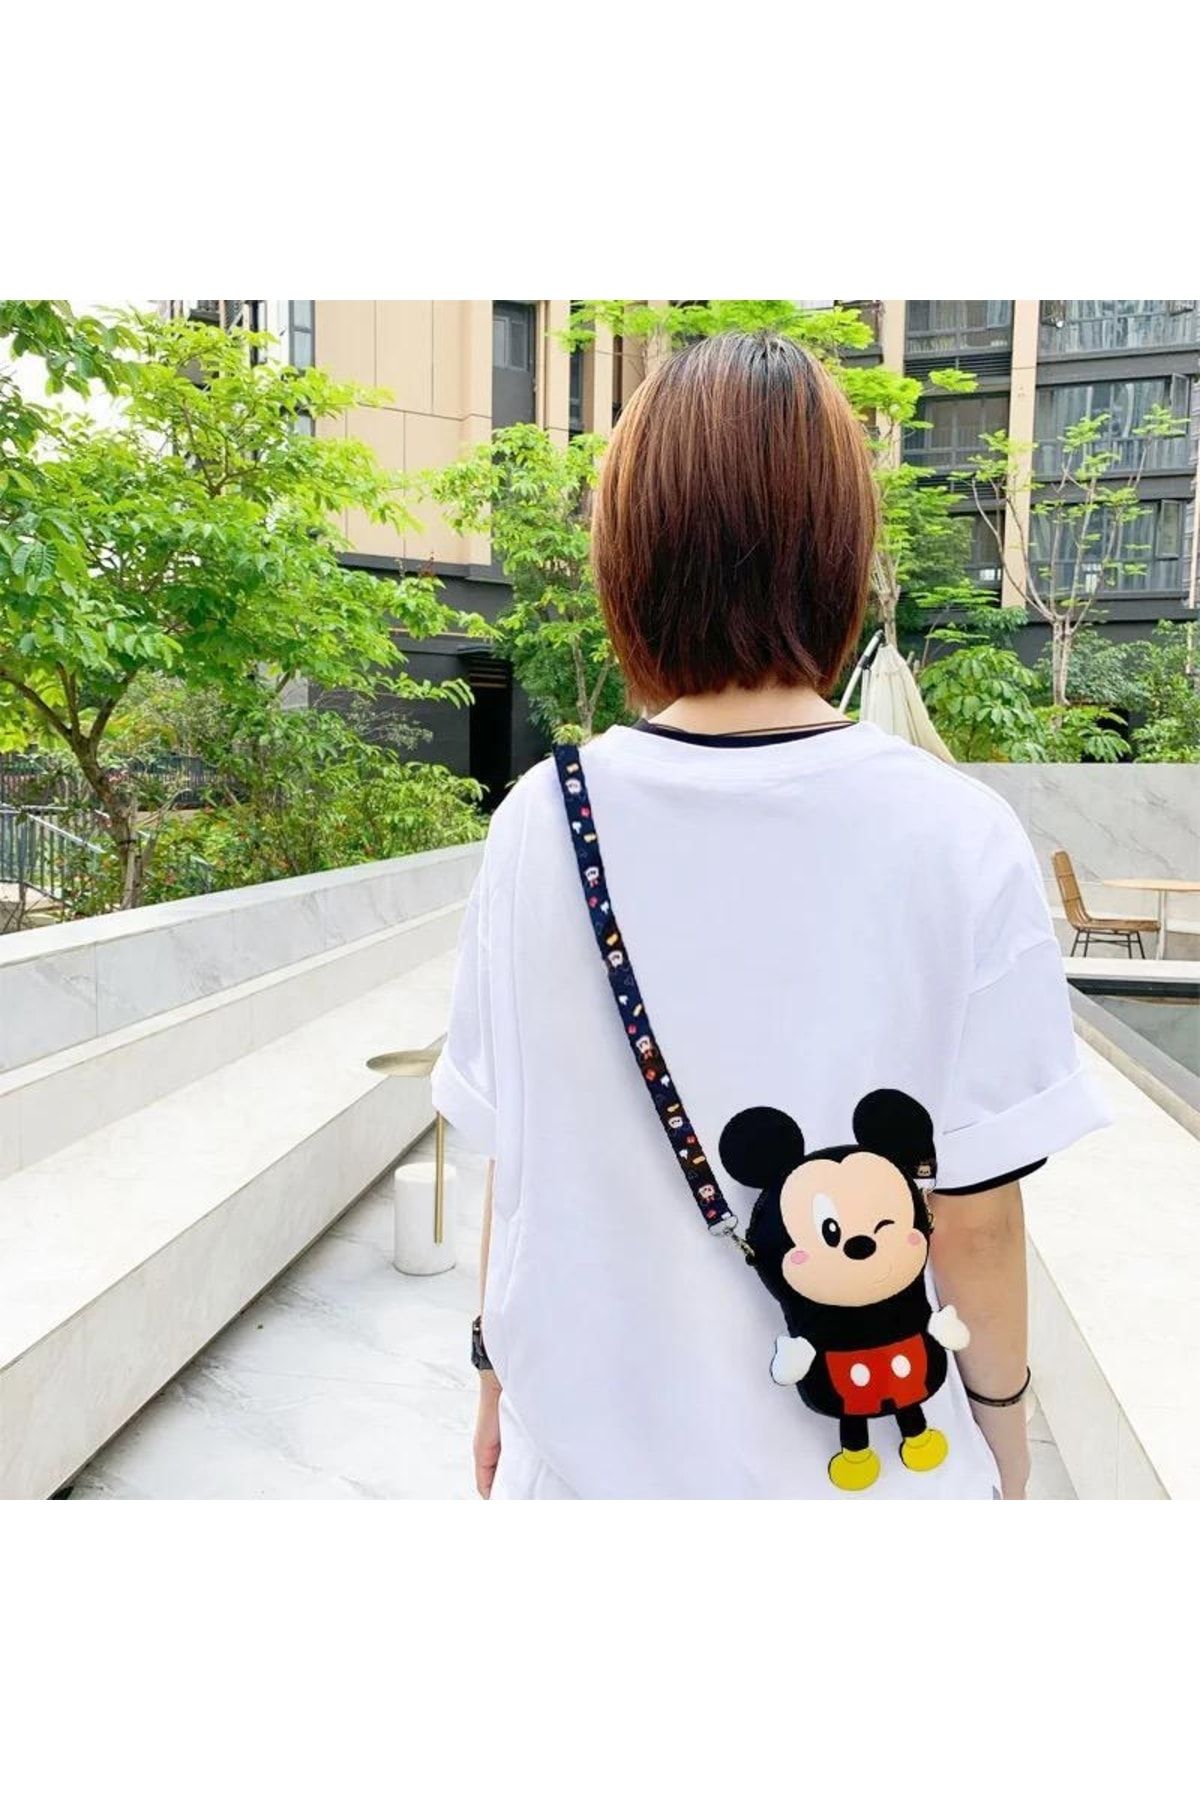 QUEEN AKSESUAR Sevimli Disney Minnie Mouse Fare Küçük Silikon Yetişkin Kadın Erkek Kız Çocuk Çantası Askılı Cüzdan